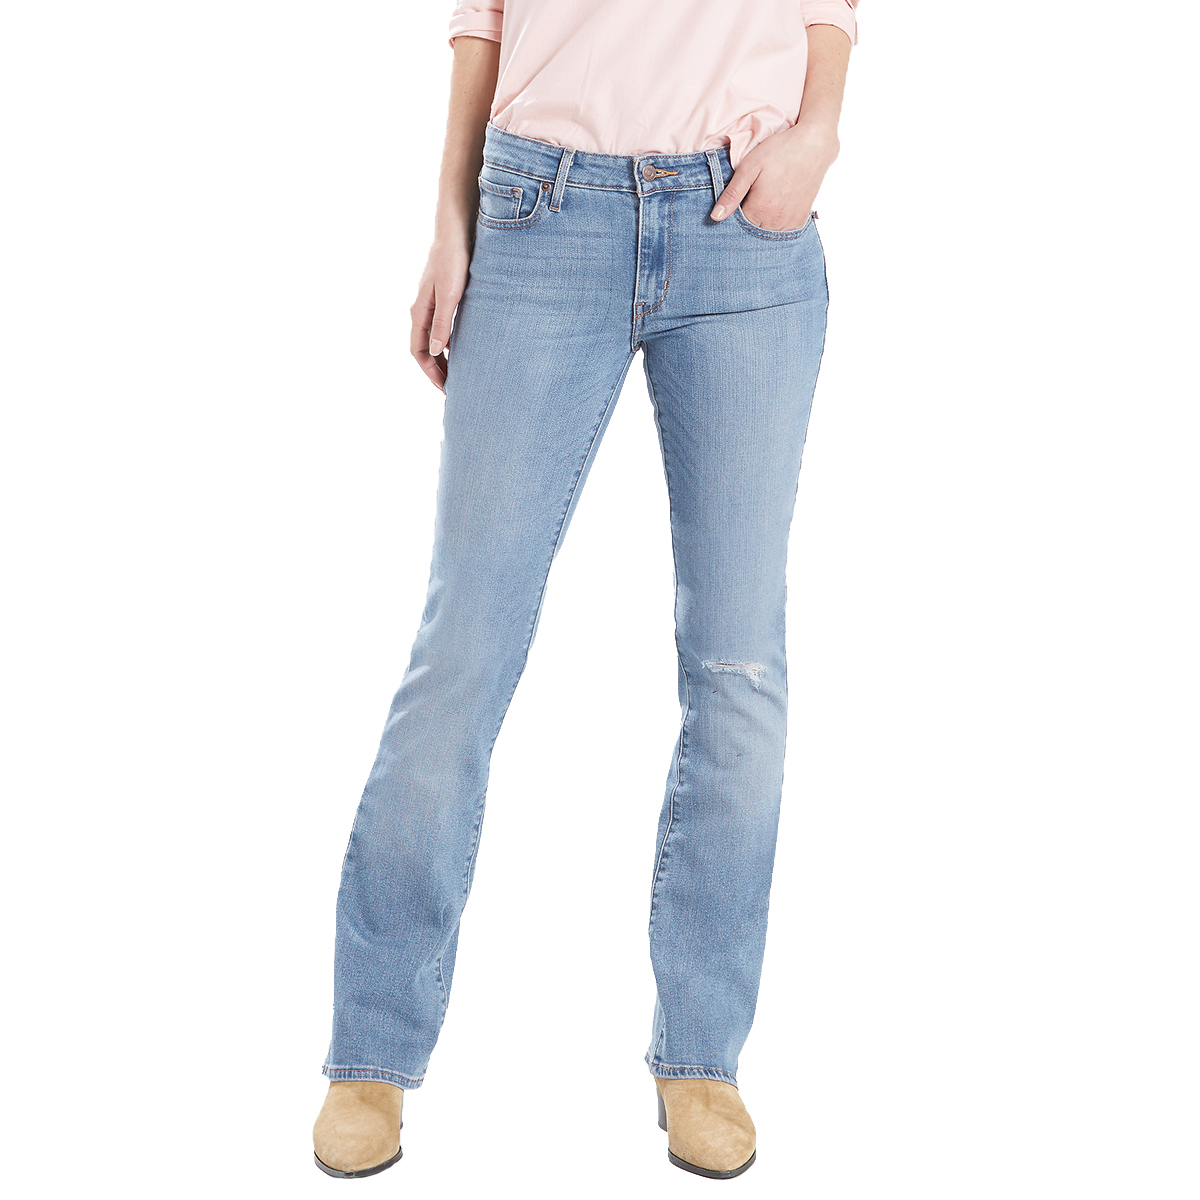 Levi's Women's 715 Vintage Boot Cut Jeans - Blue, 31